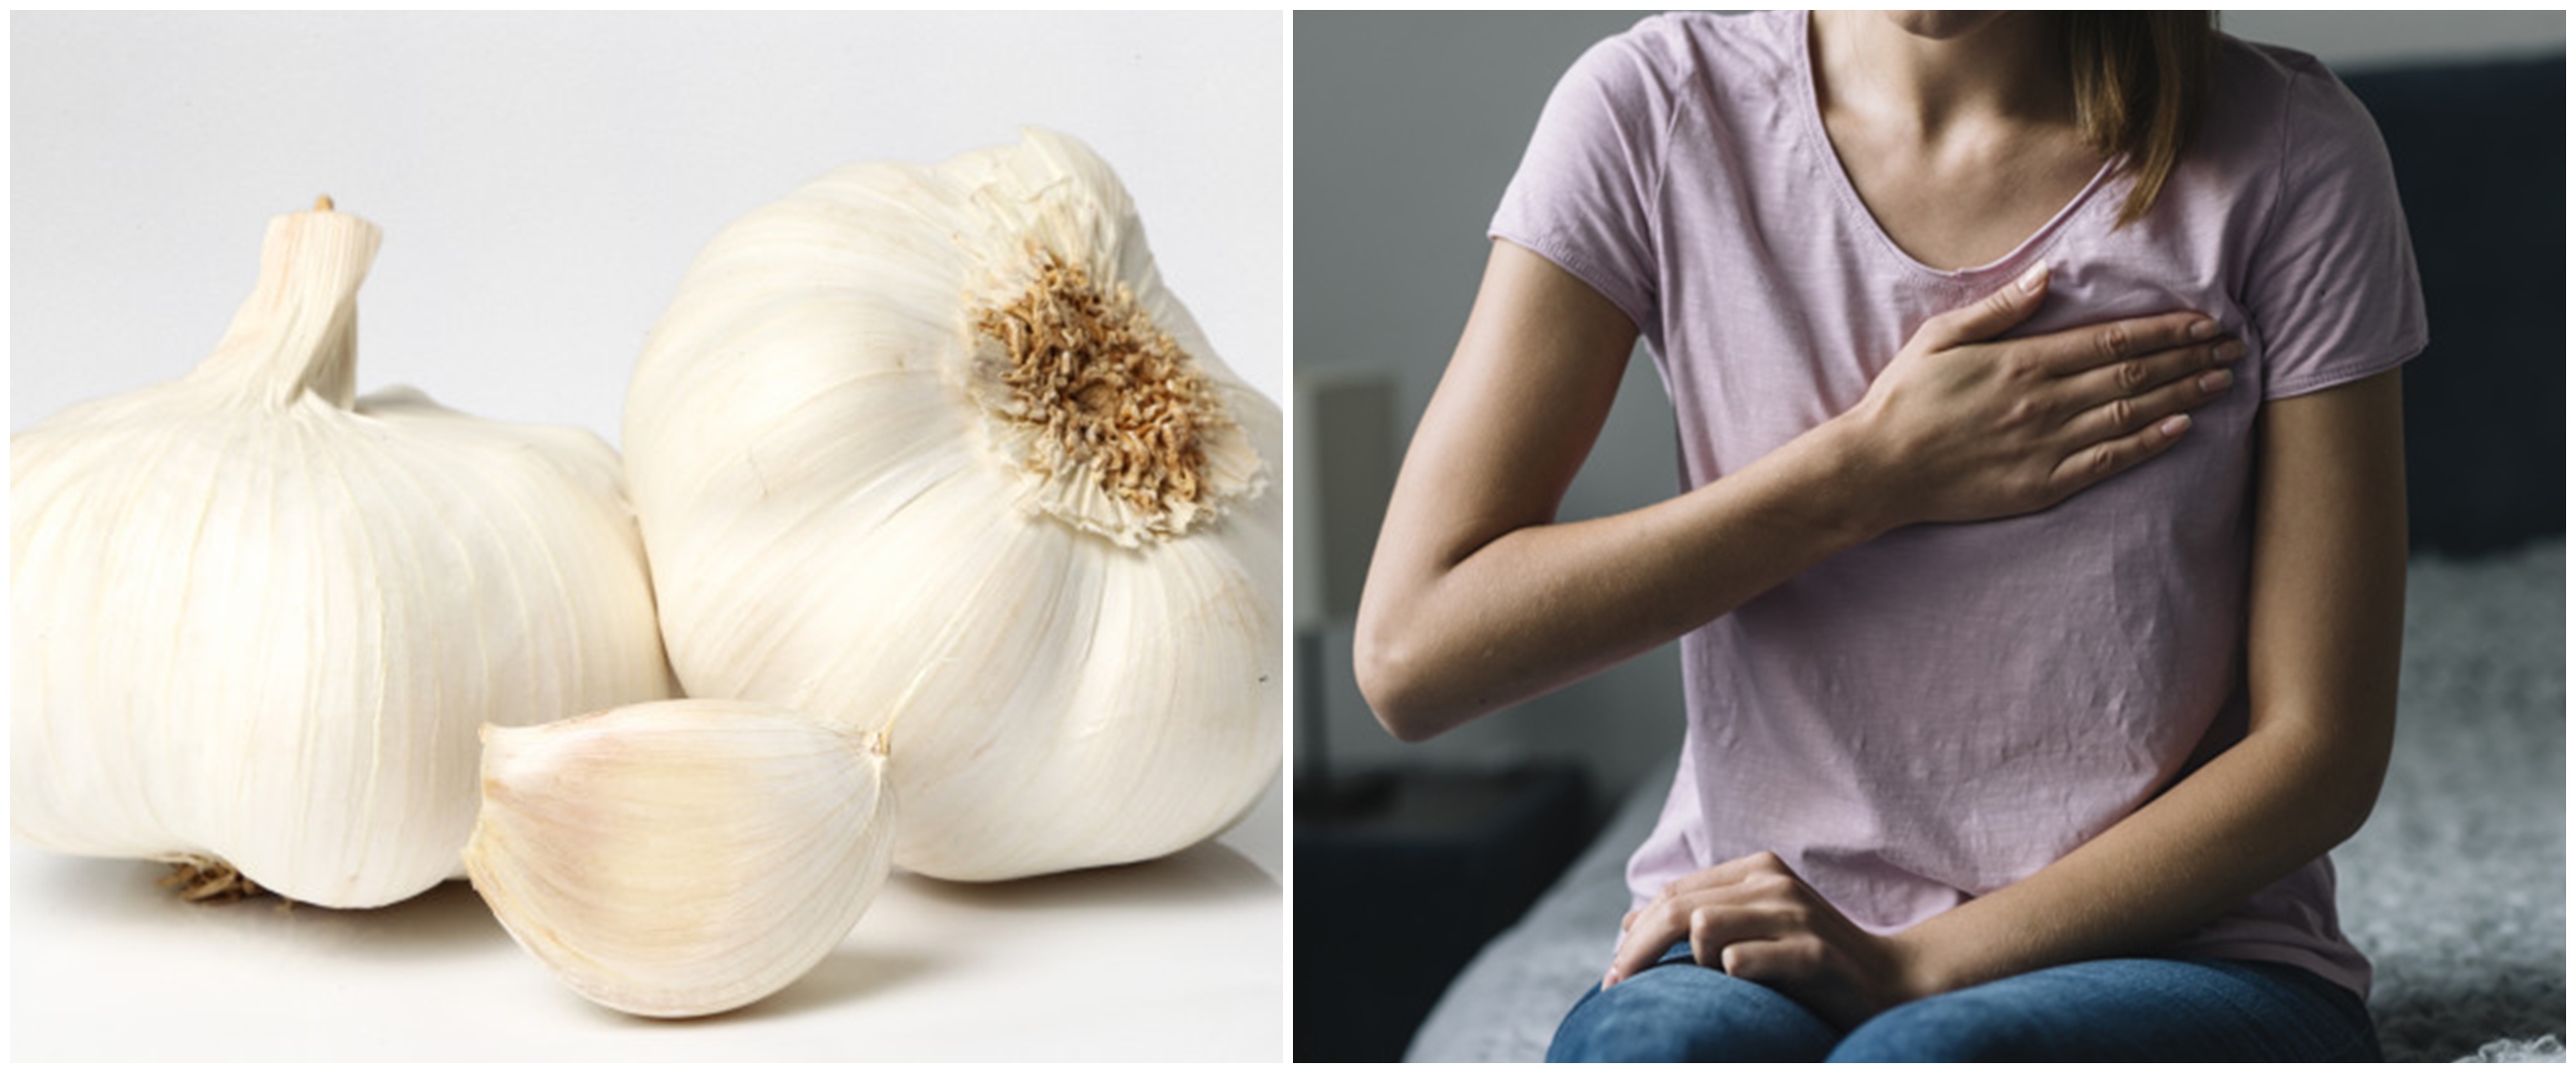 10 Manfaat bawang putih untuk wanita dan cara menggunakannya